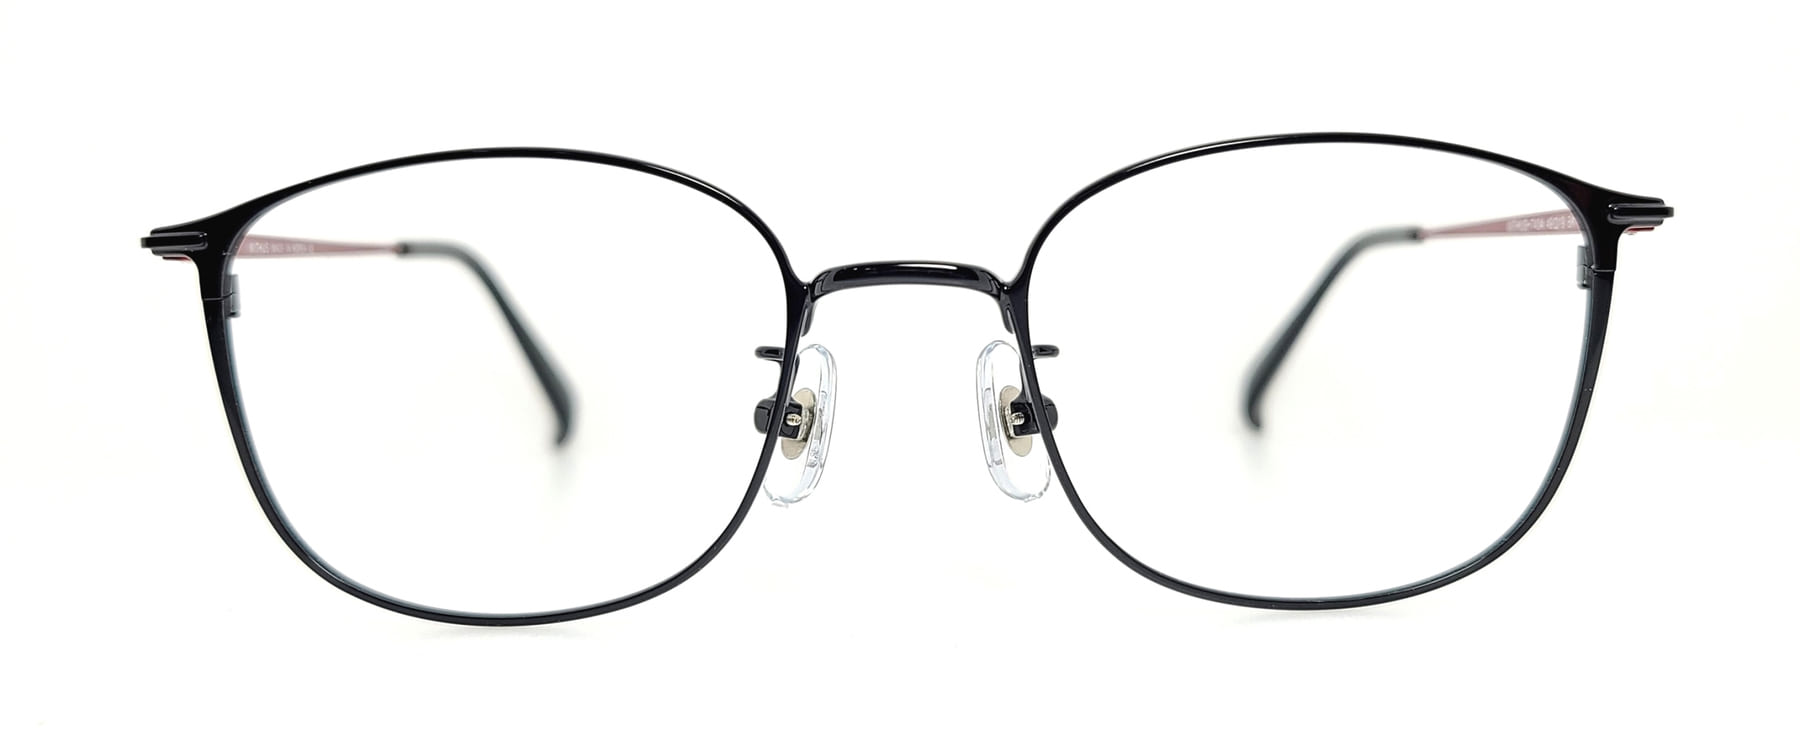 WITHUS-7434, Korean glasses, sunglasses, eyeglasses, glasses